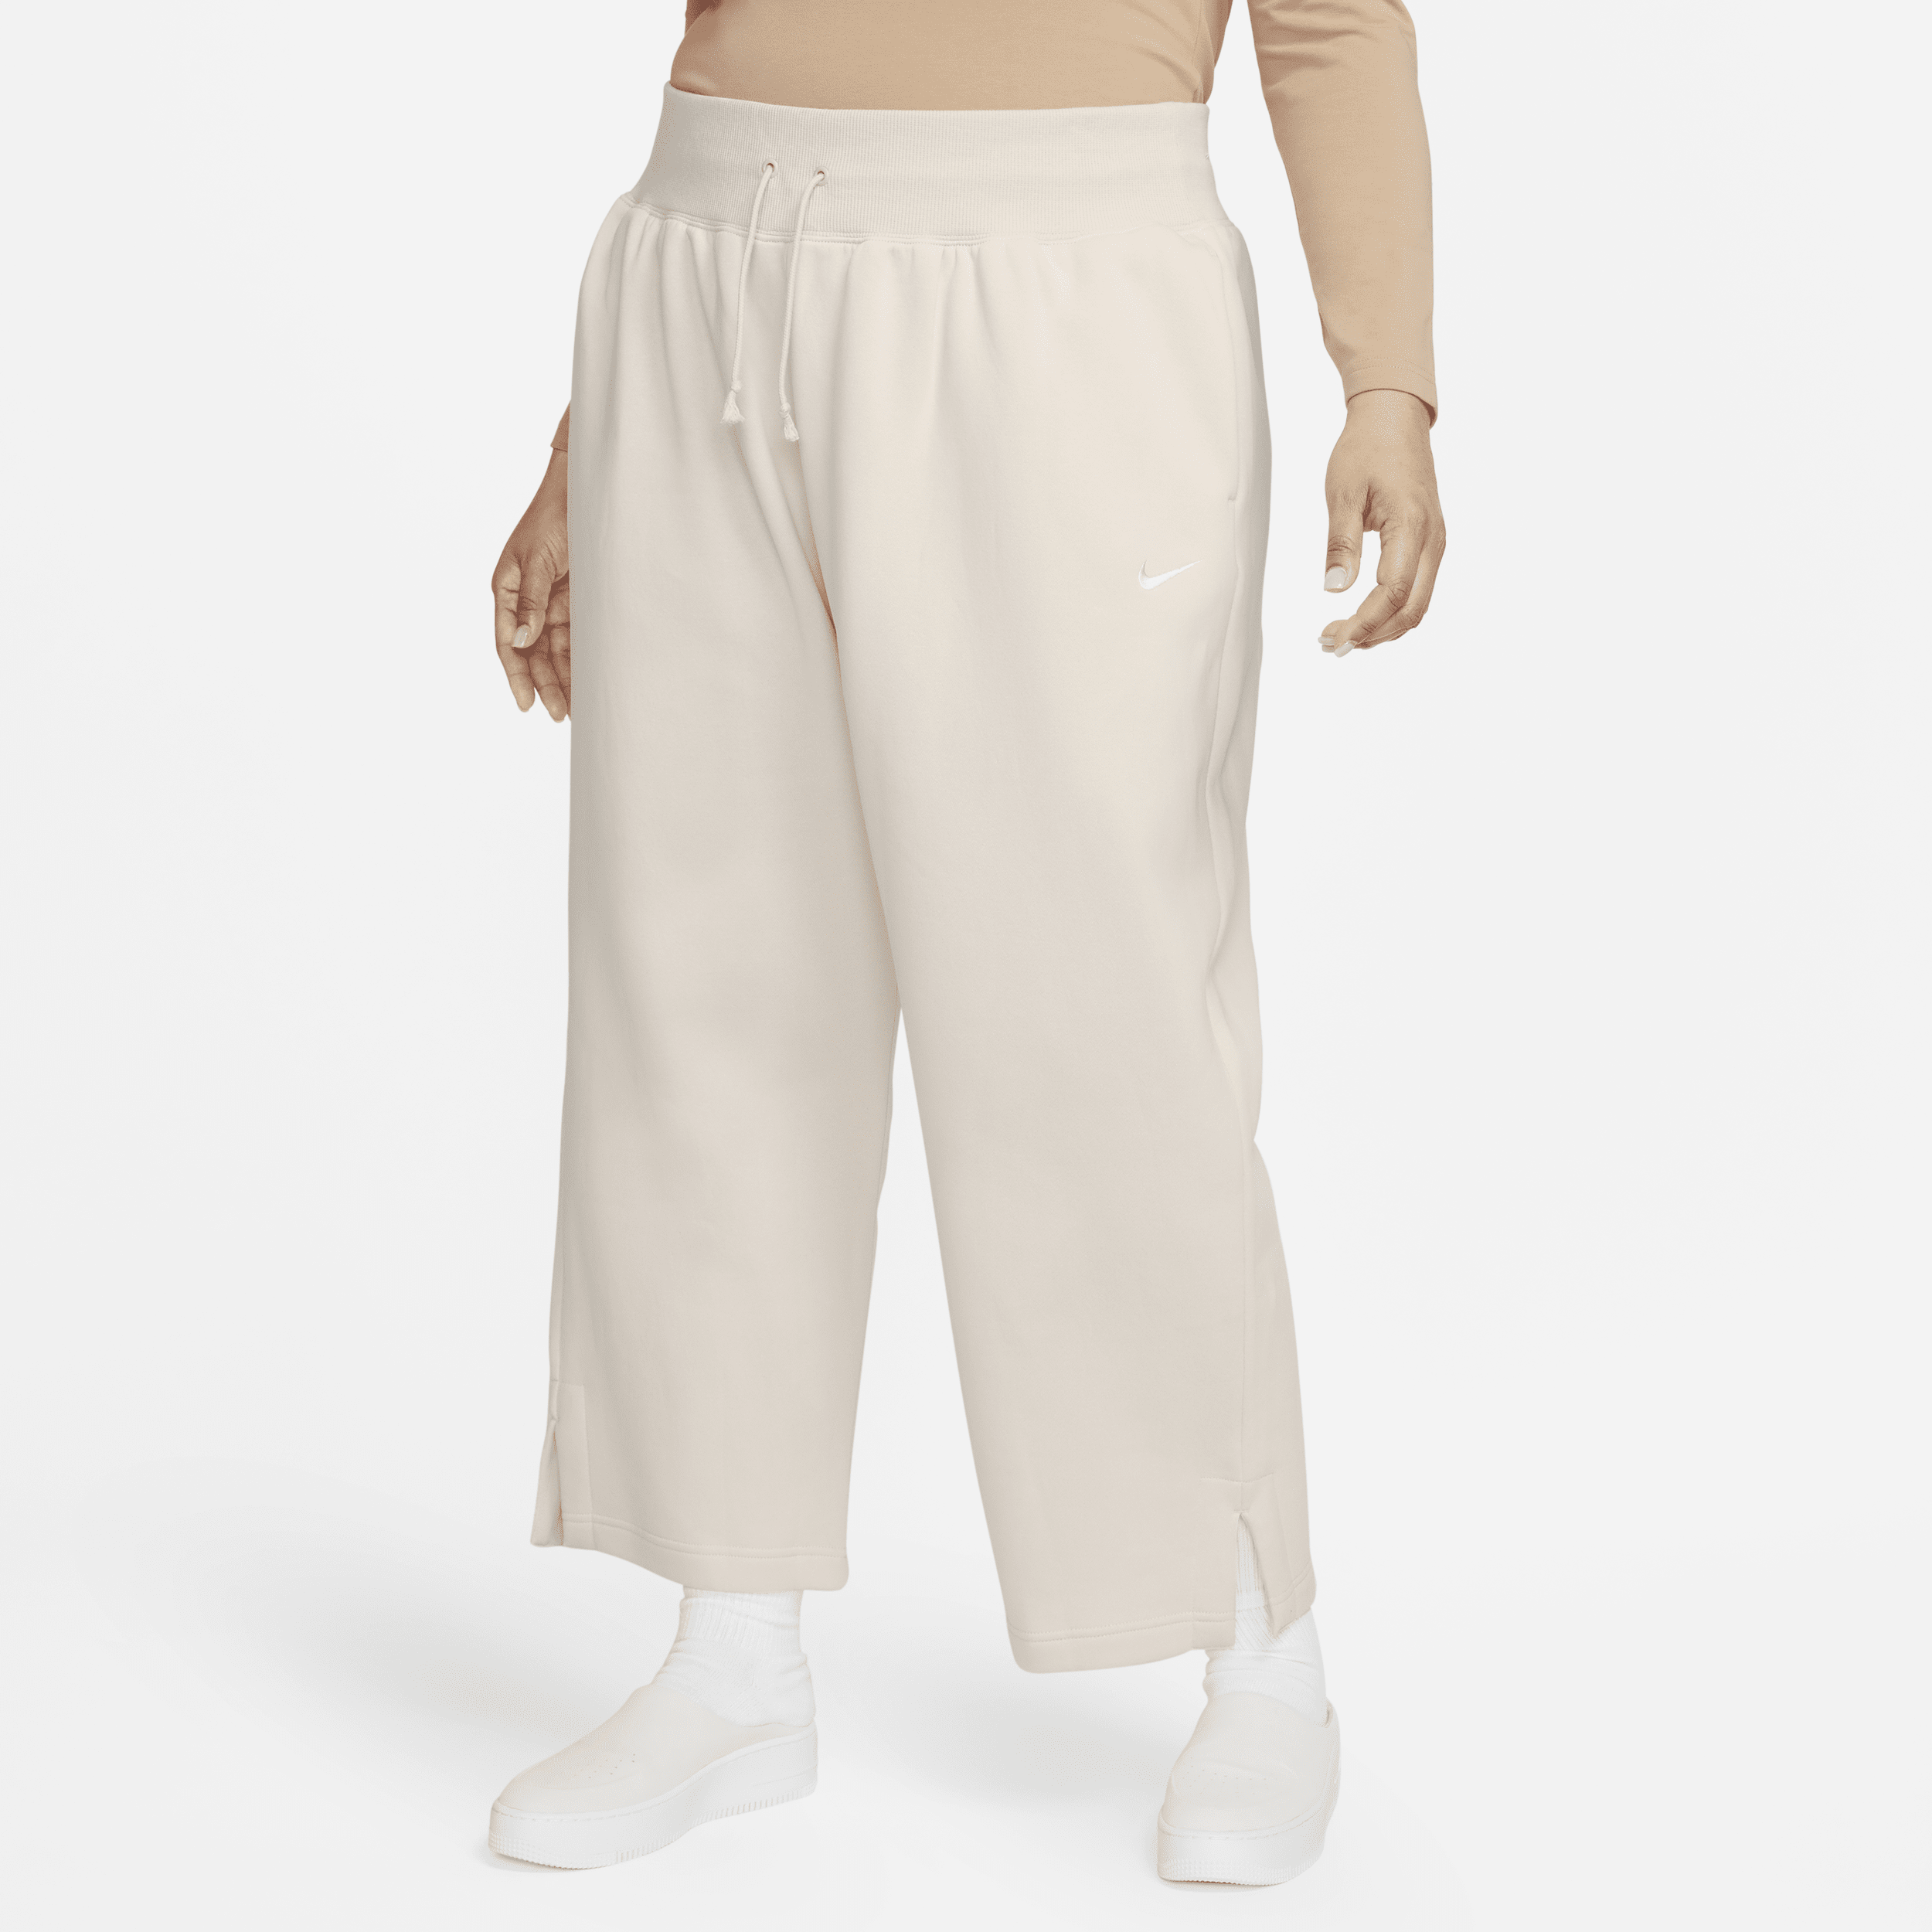 Nike Sportswear Phoenix Fleece-sweatpants med høj talje og brede ben til kvinder (plus size) - brun